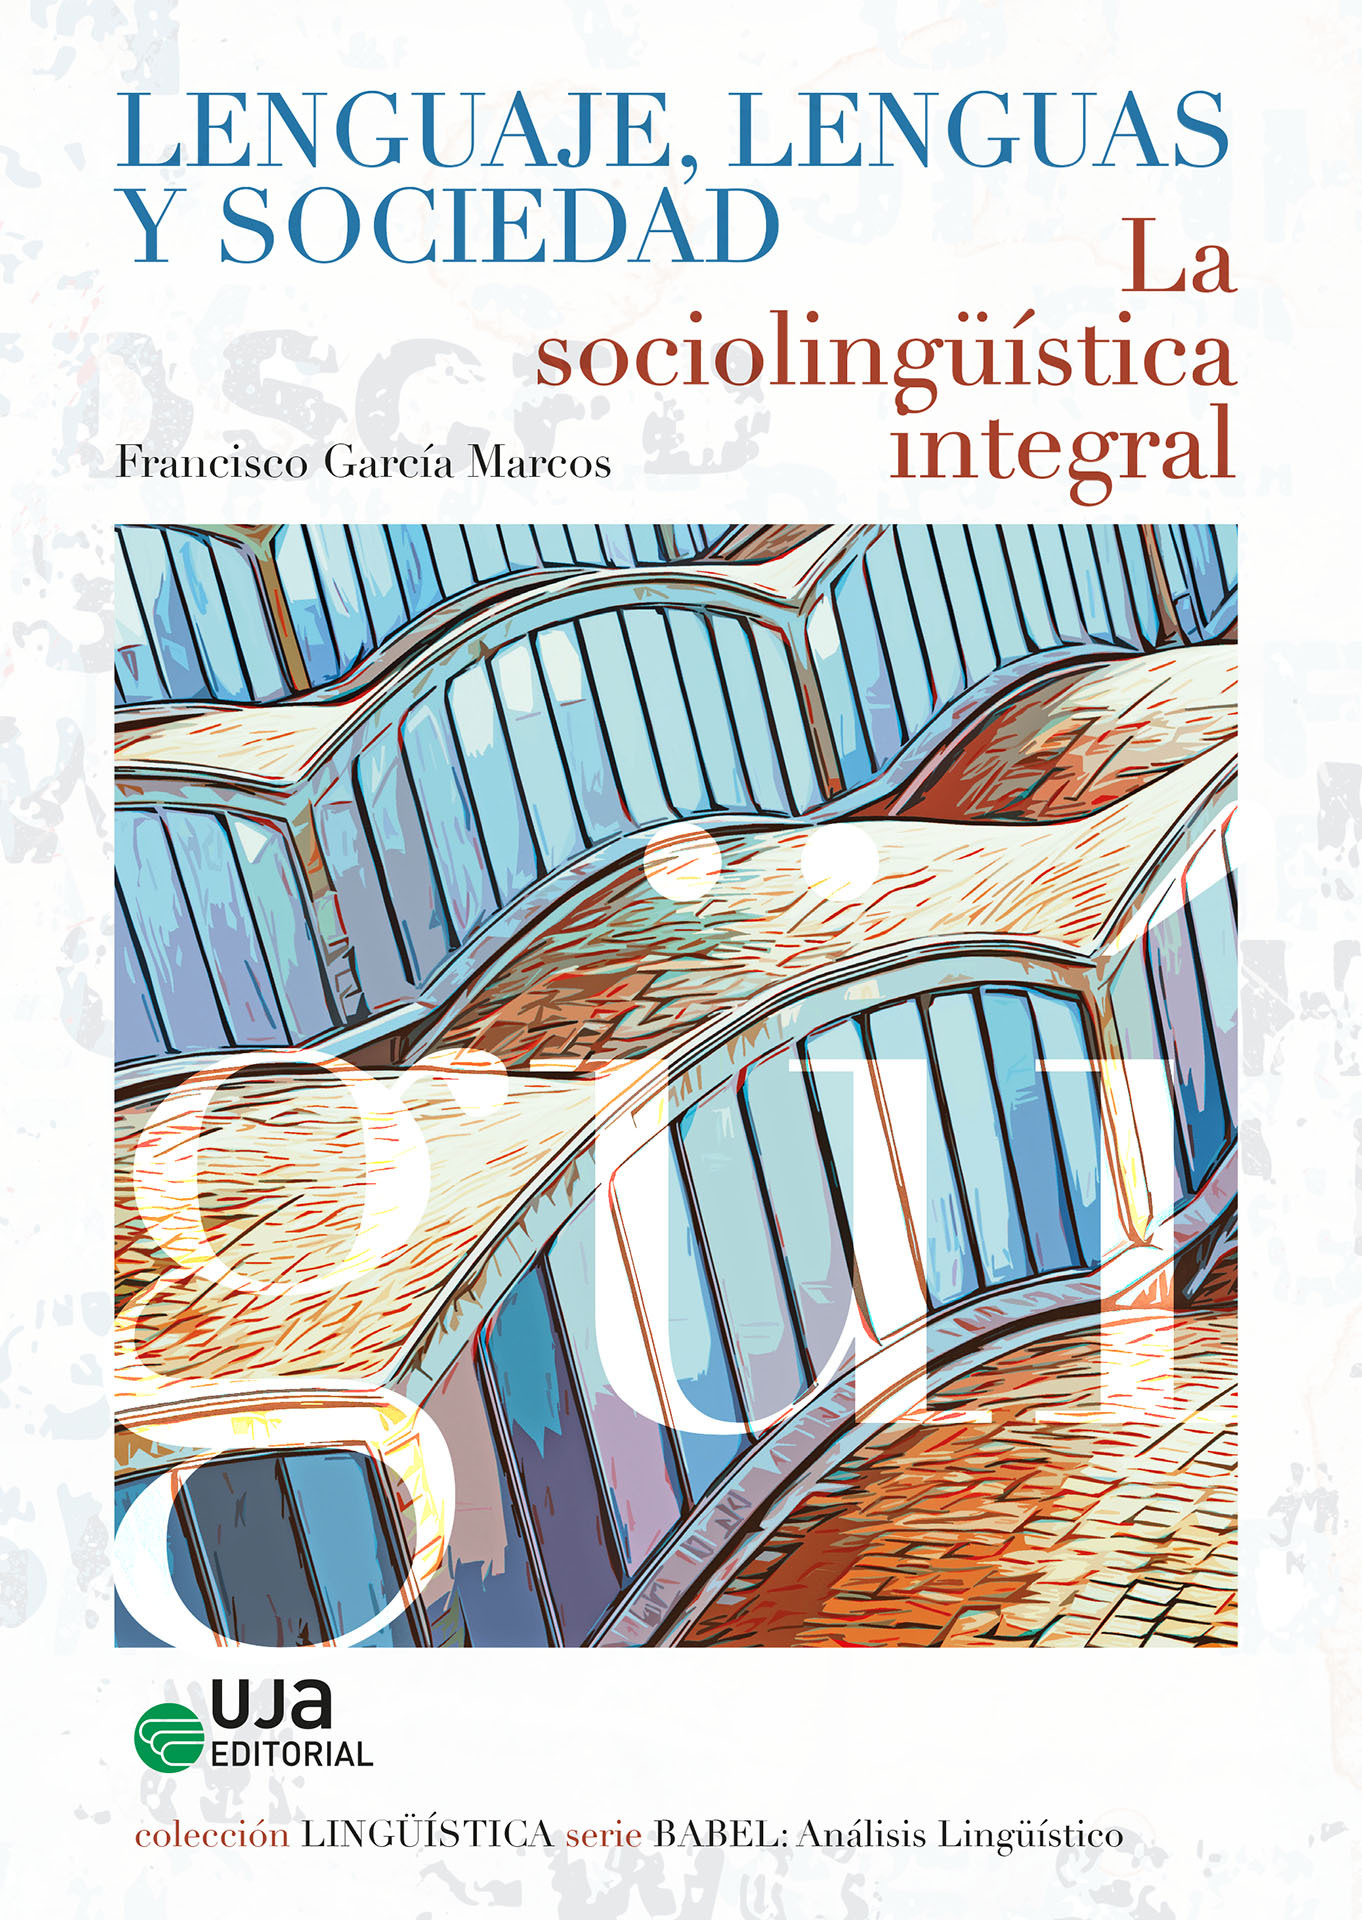 Imagen de portada del libro Lenguaje, lenguas y sociedad :